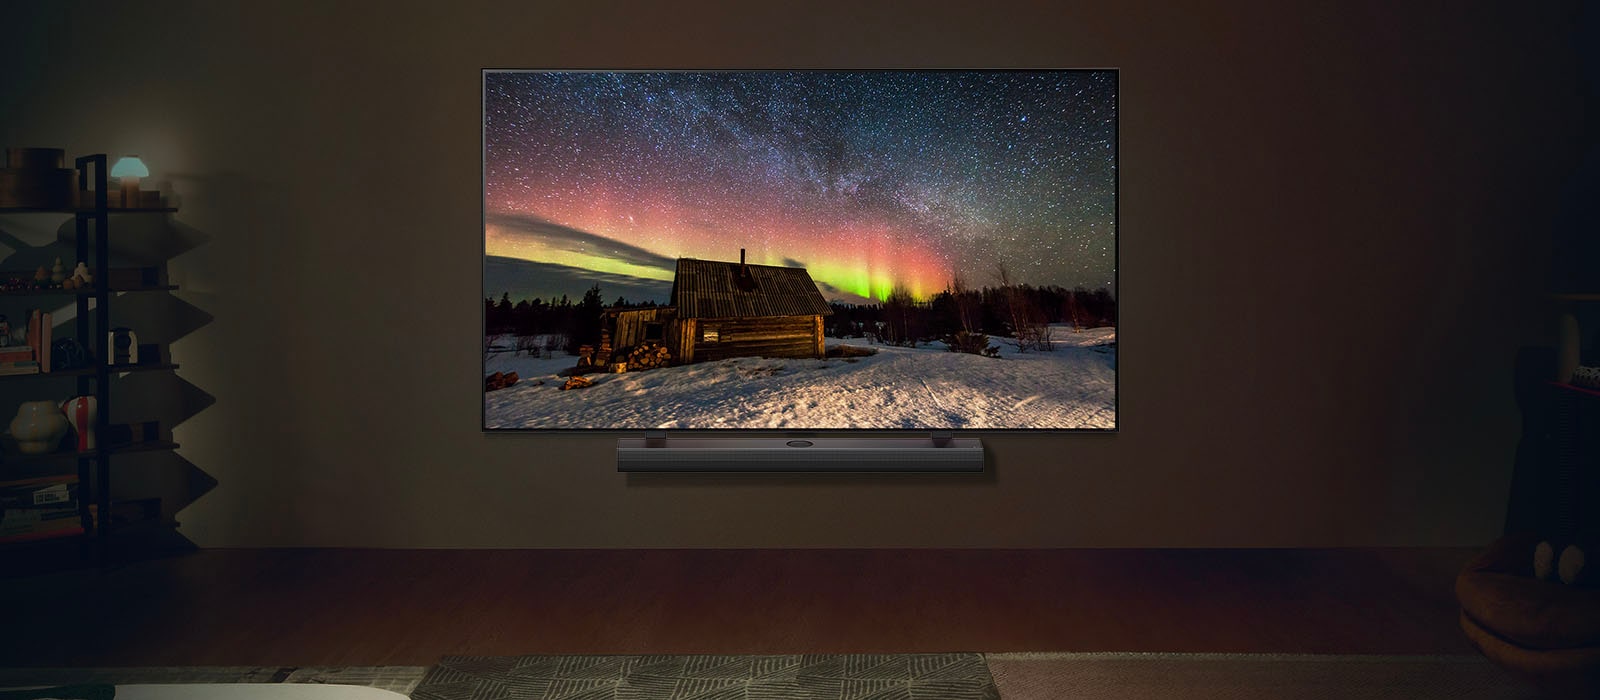 LG TV ja LG Soundbar modernissa olohuoneessa yöllä. Aurora borealis -näyttökuva näytetään ihanteellisilla kirkkaustasoilla.